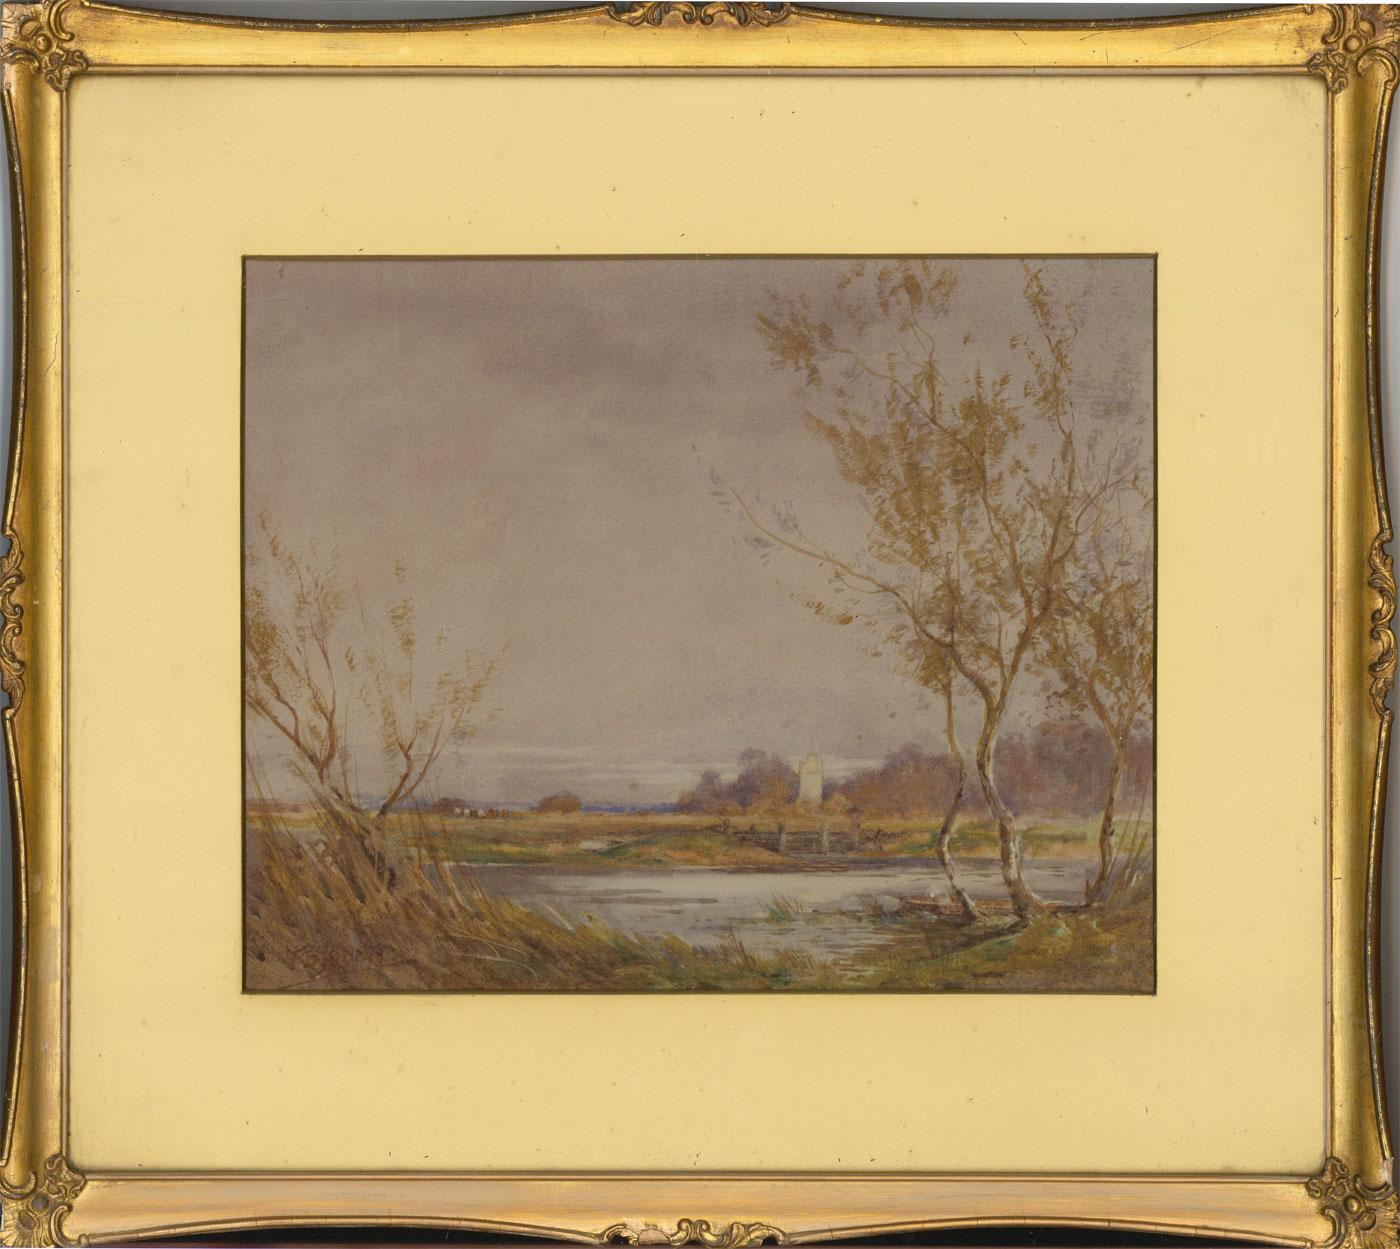 Unknown Landscape Art - Frank B. Jowett ( 1879-1943) - Signed & Framed Watercolour, River Landscape